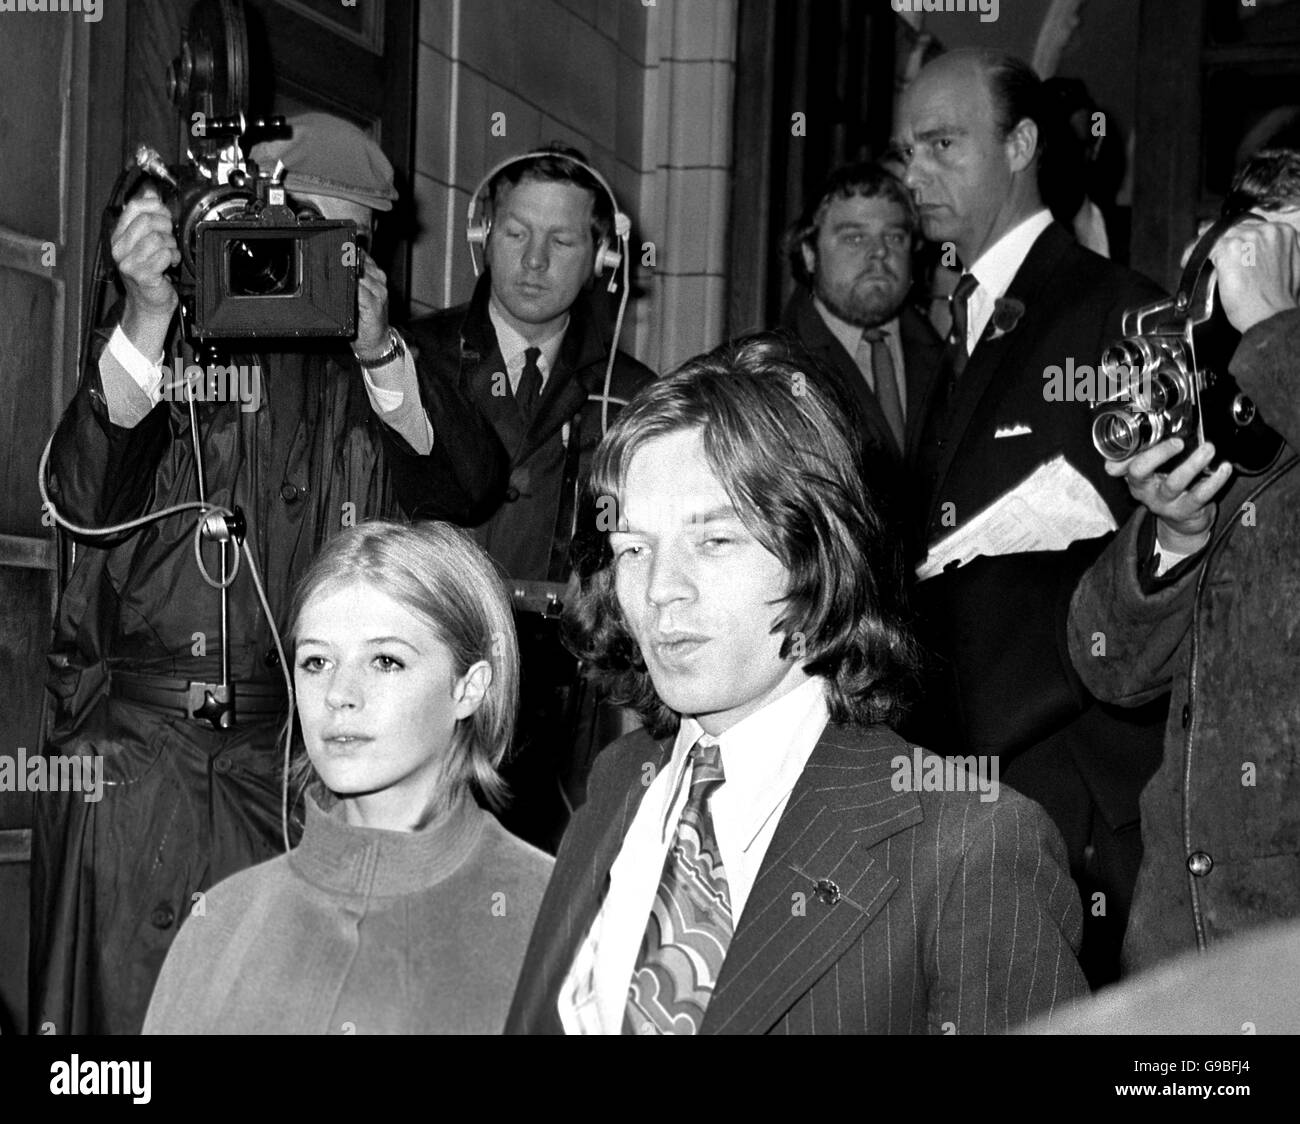 Mick Jagger, 25-jähriger Sänger bei den Rolling Stones, und seine Freundin Marianne Faithfull, nachdem sie etwa zwei Minuten lang vor dem Marlborough Street Court aufgetreten waren, wo der Fall, in dem sie wegen Cannabisbesitzes angeklagt wurden, vertagt wurde. Stockfoto